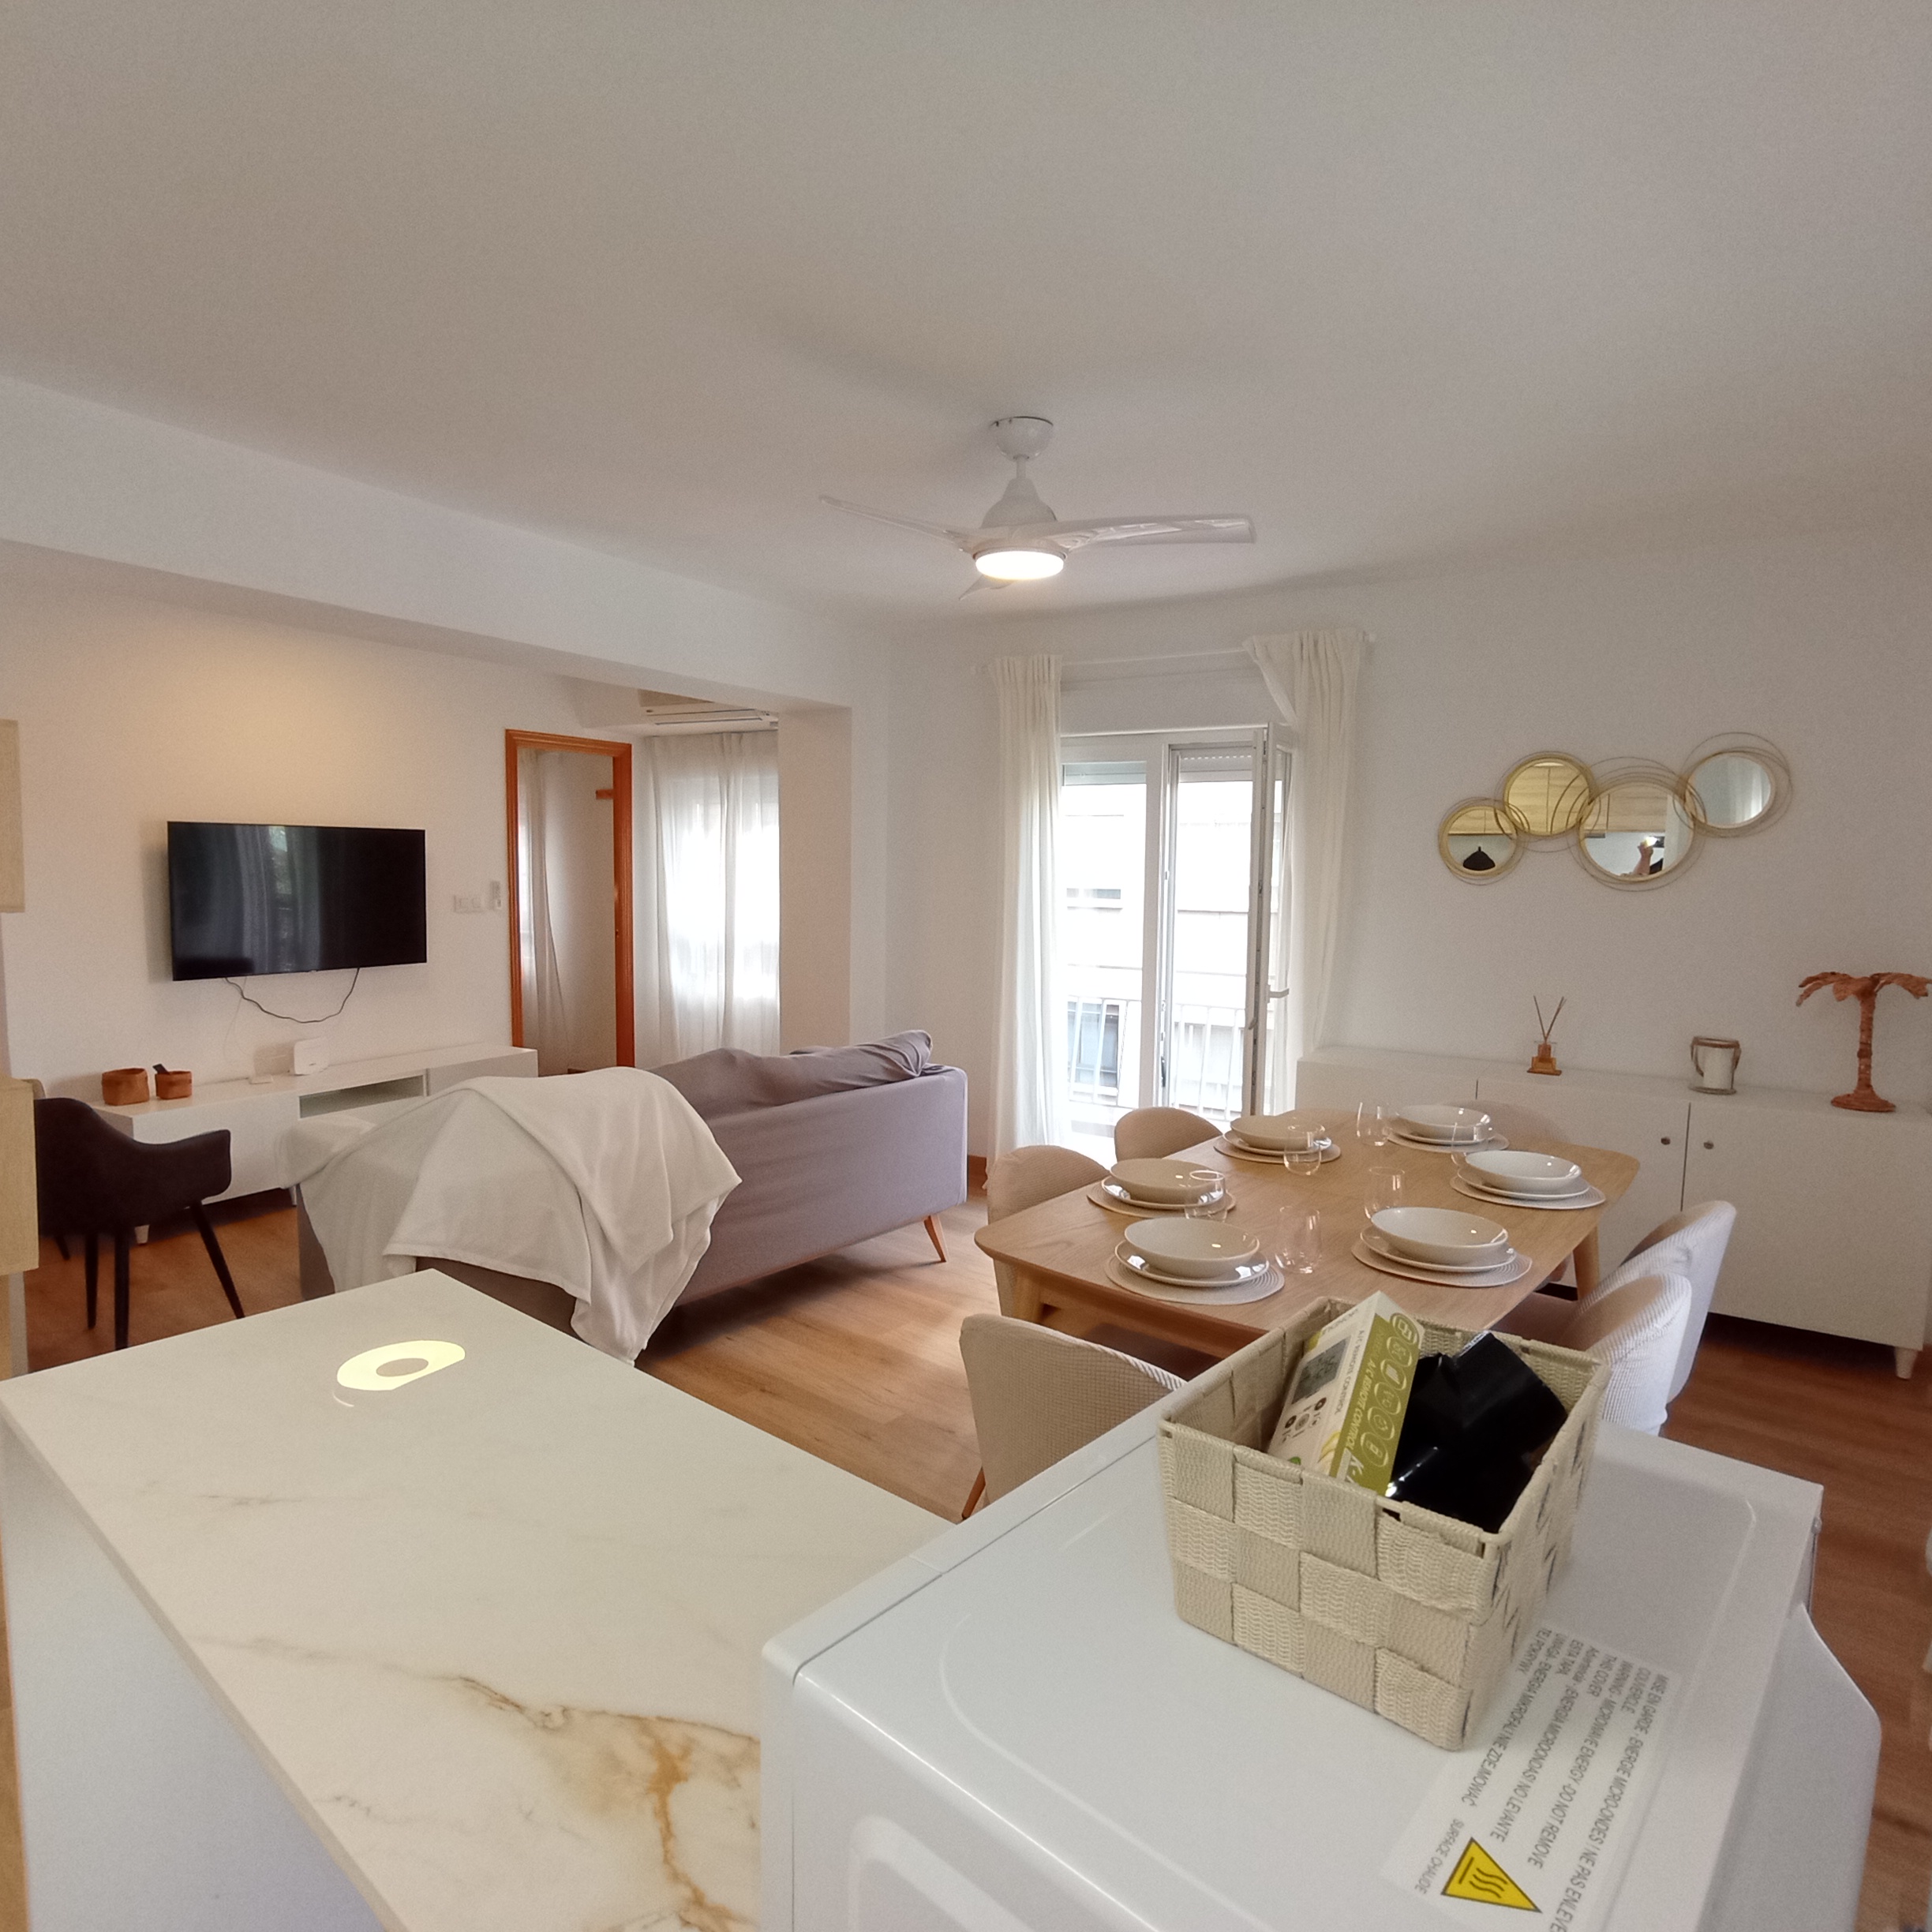 Trafalgar - 3 Bedroom apartment for rent in Valencia living room